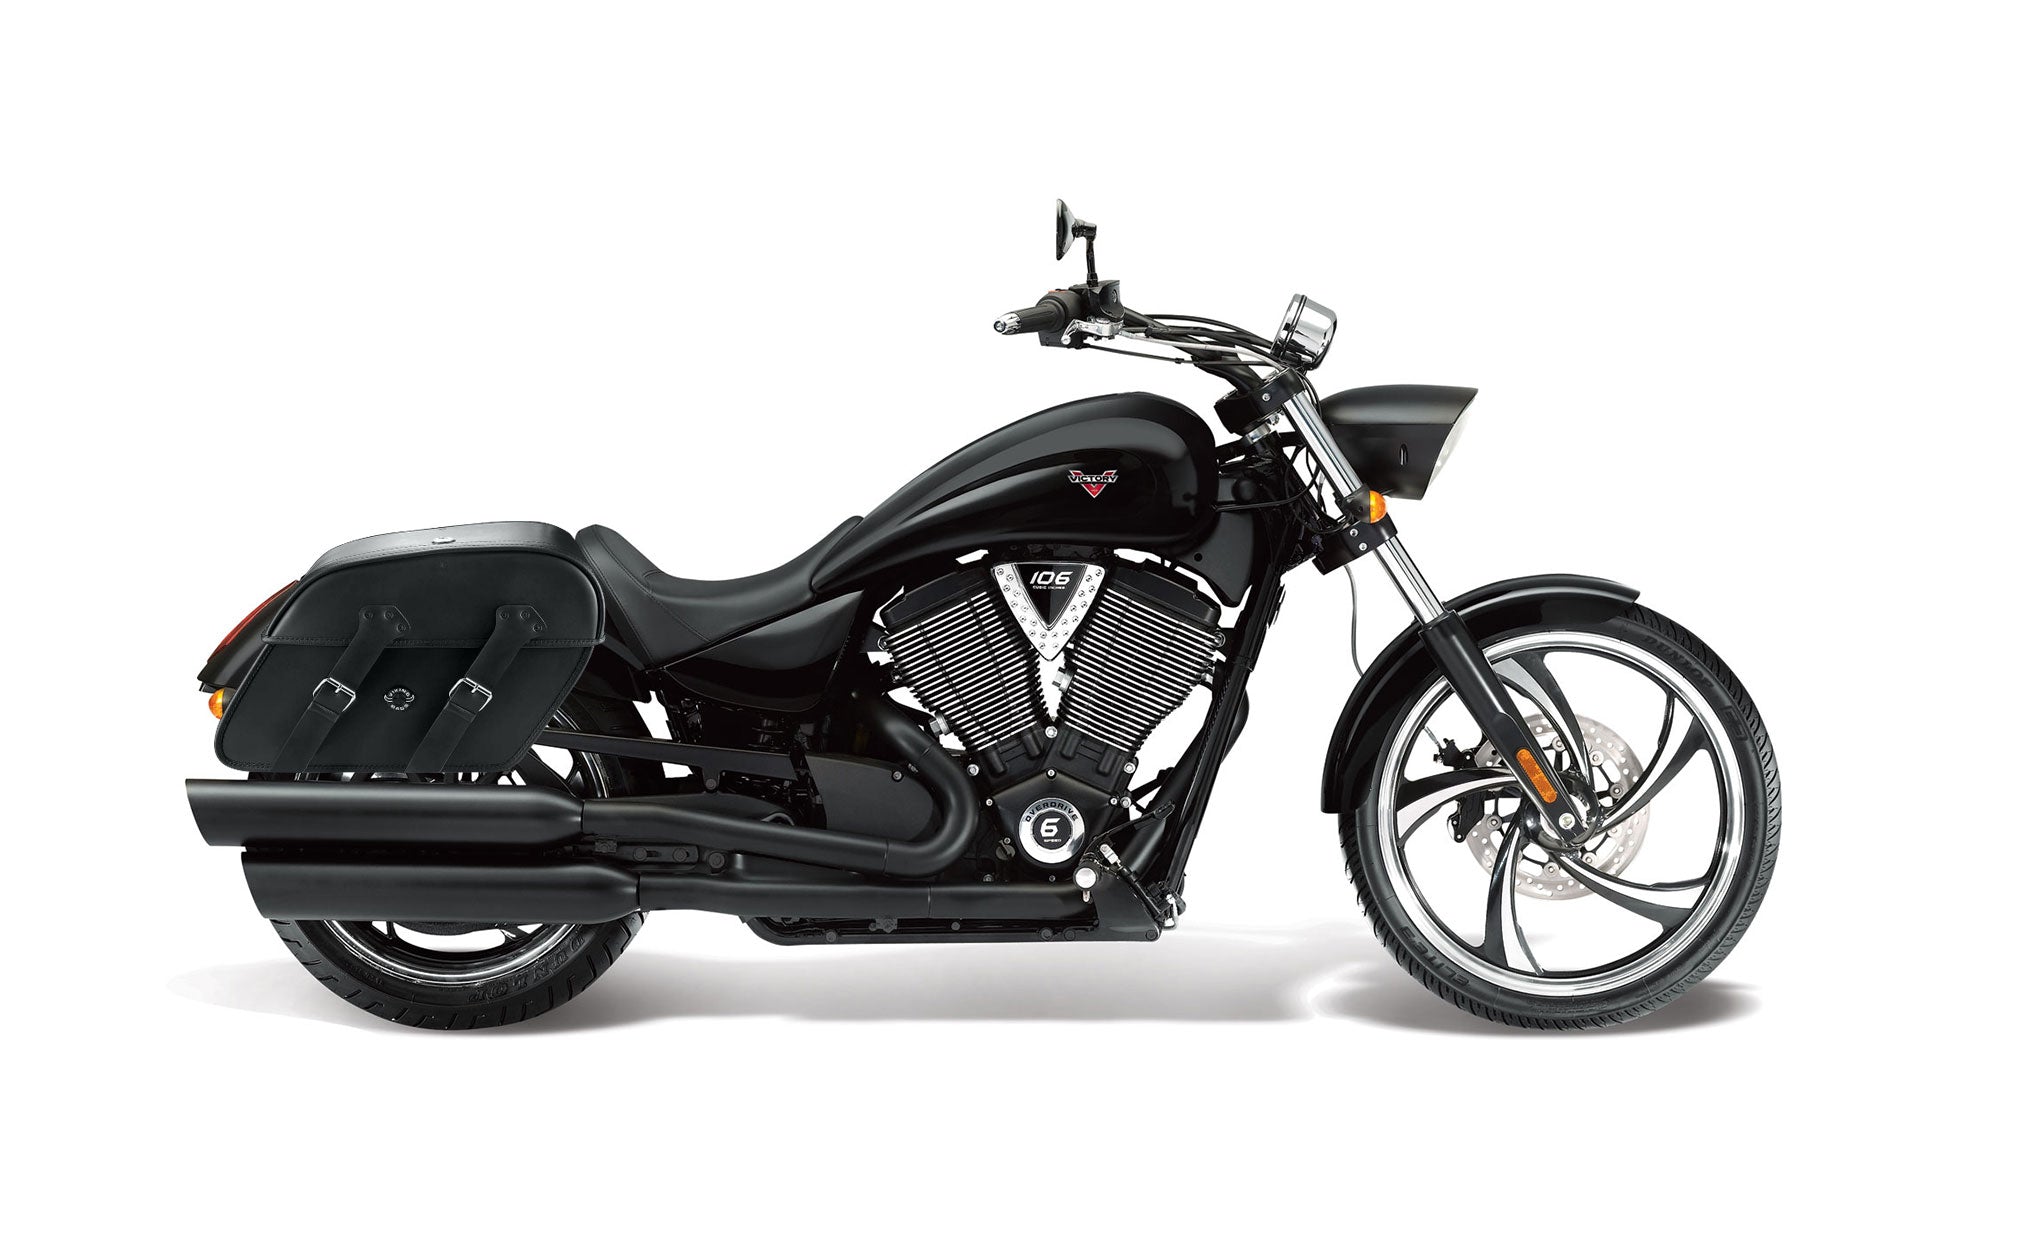 Viking Raven Extra Large Victory 8 Ball Leather Motorcycle Saddlebags on Bike Photo @expand